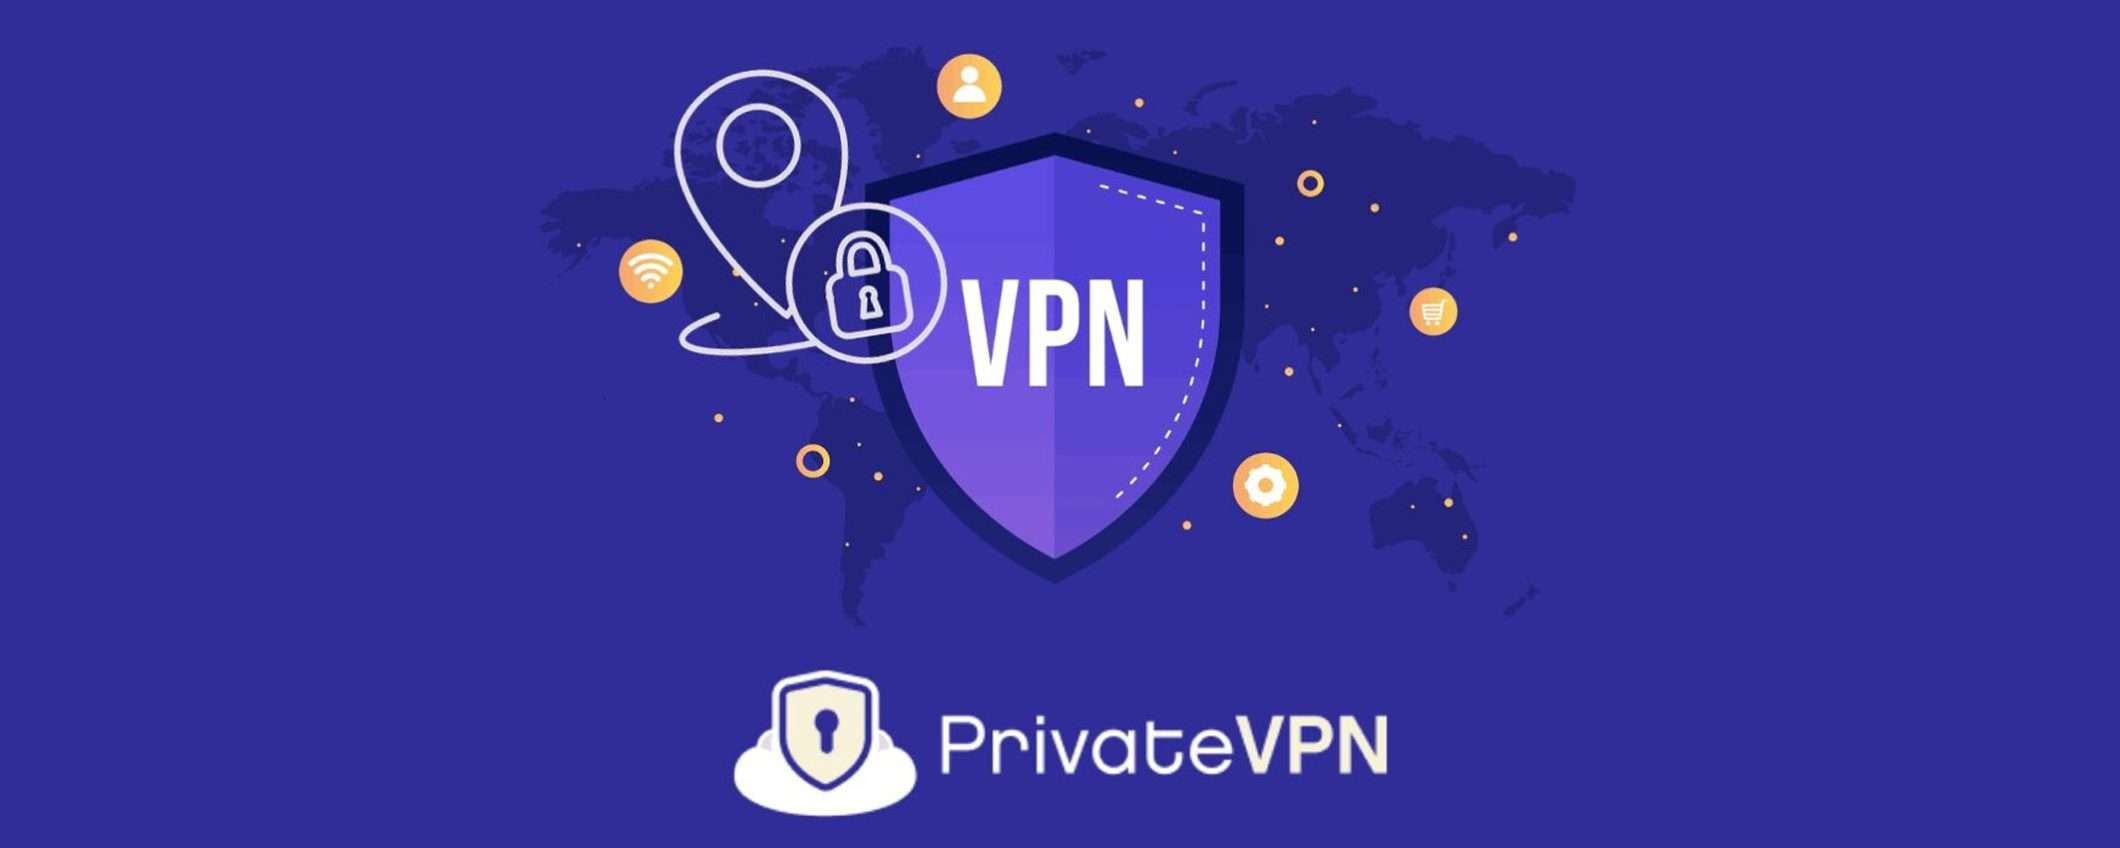 PrivateVPN: la VPN più economica ora…più economica